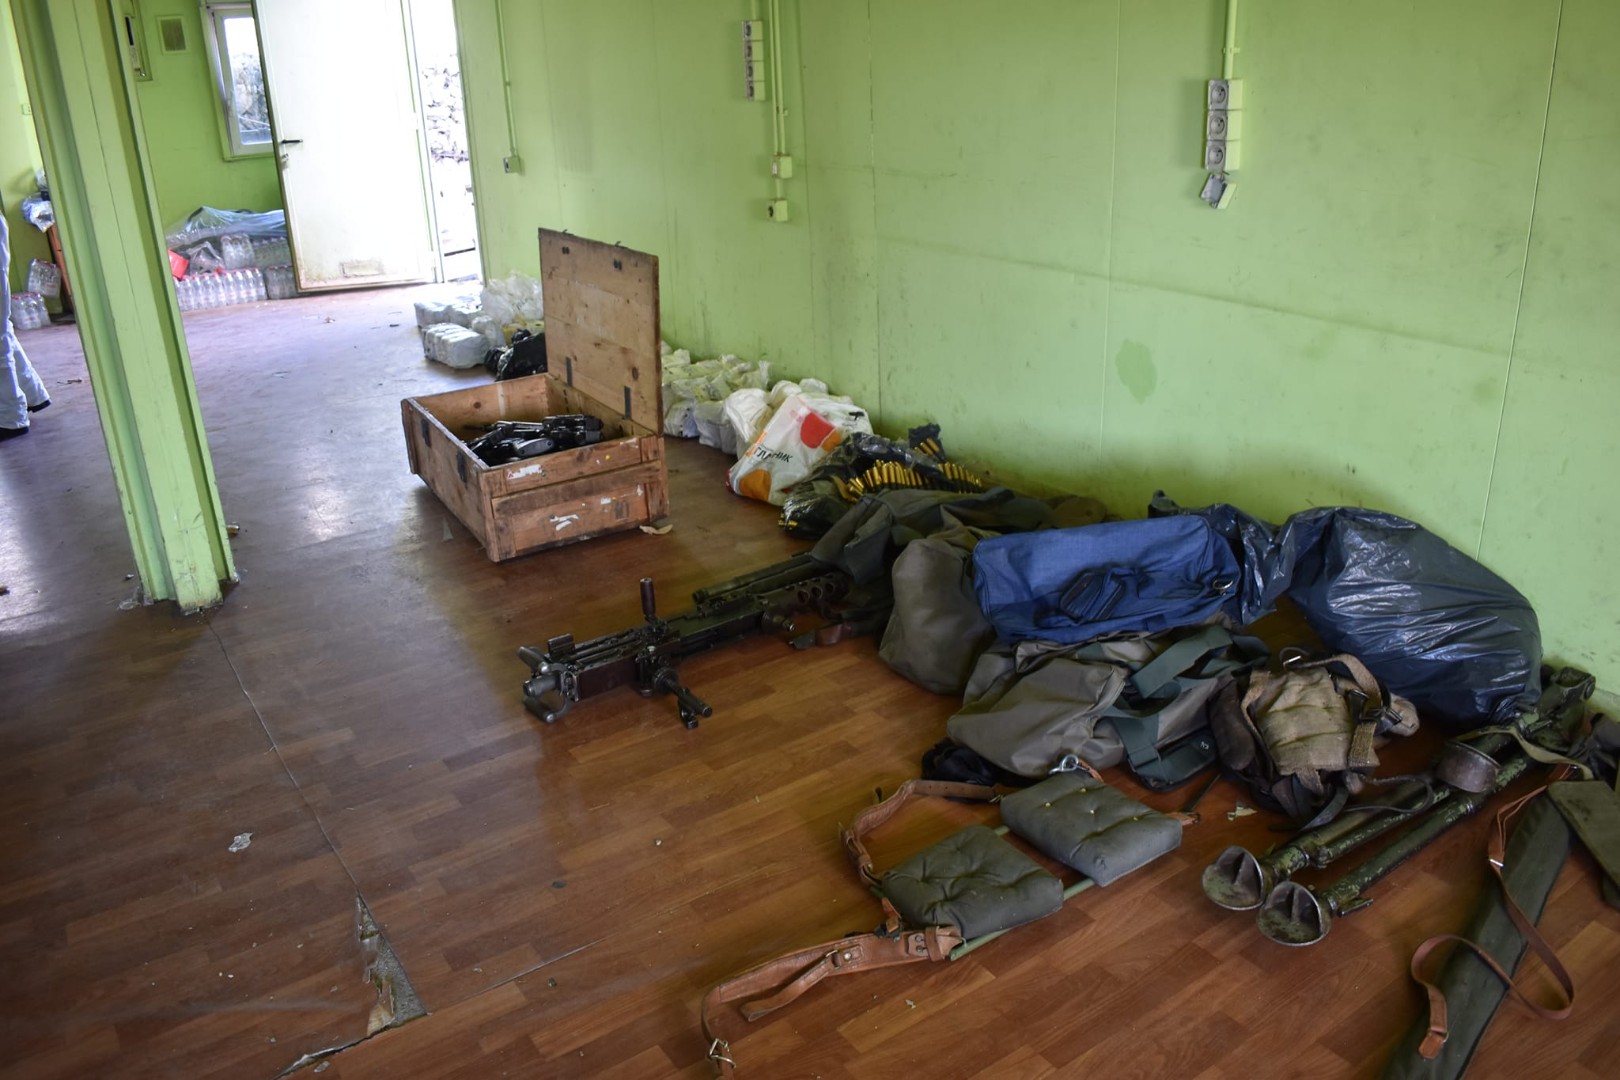 Foto: Pronađeno novo skladište oružja terorista s Kosova